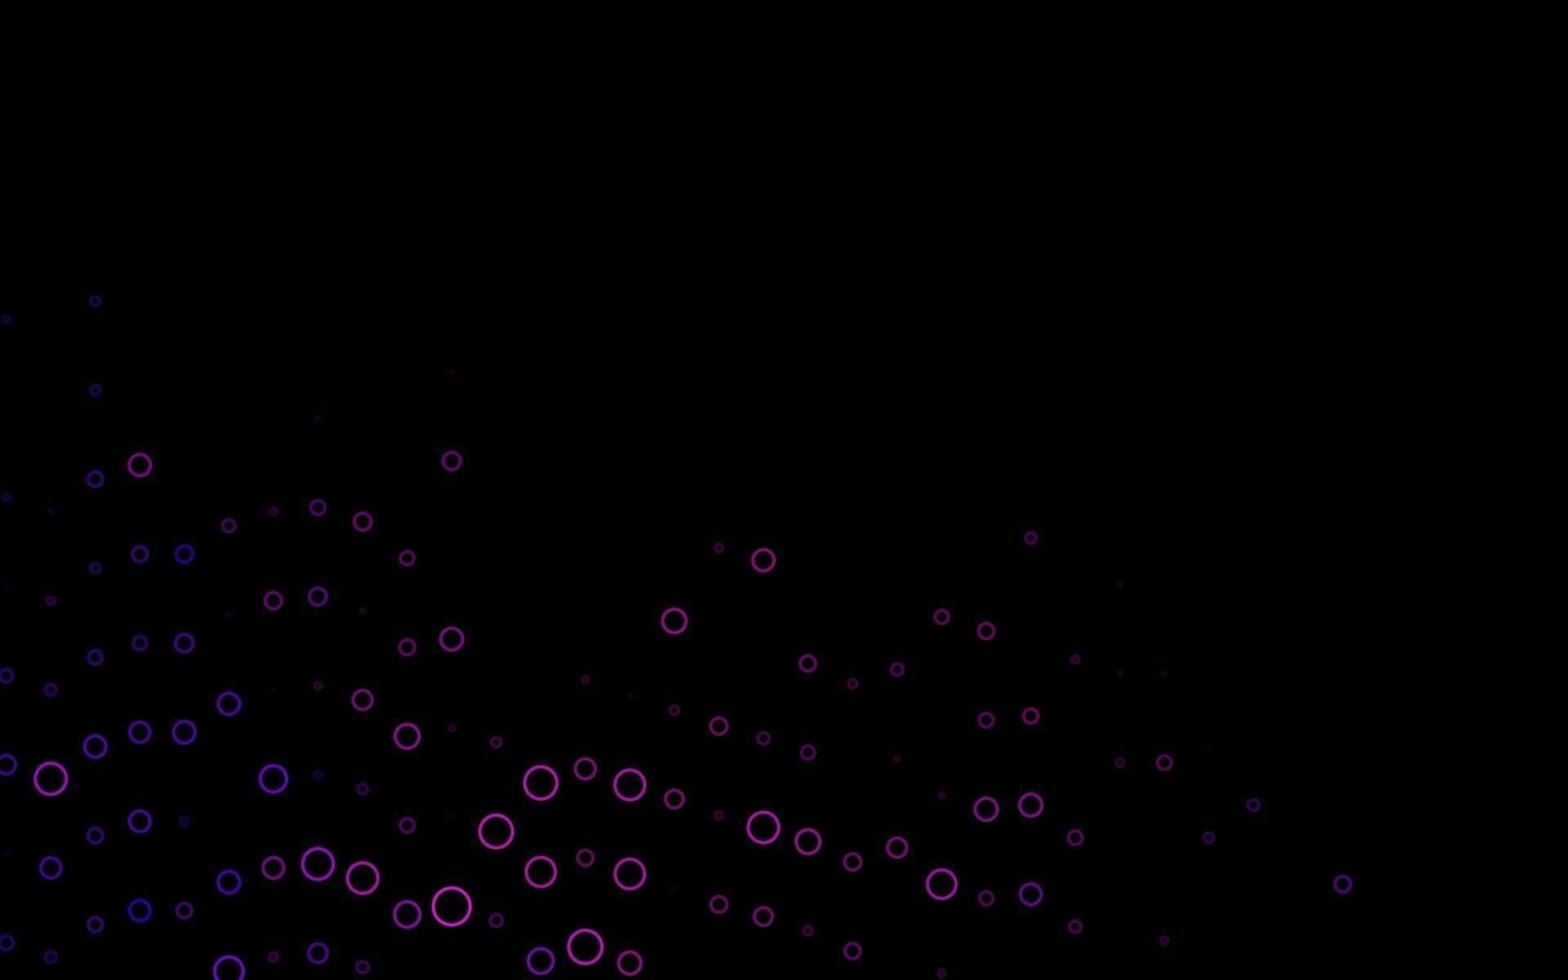 Telón de fondo de vector rosa oscuro con puntos.